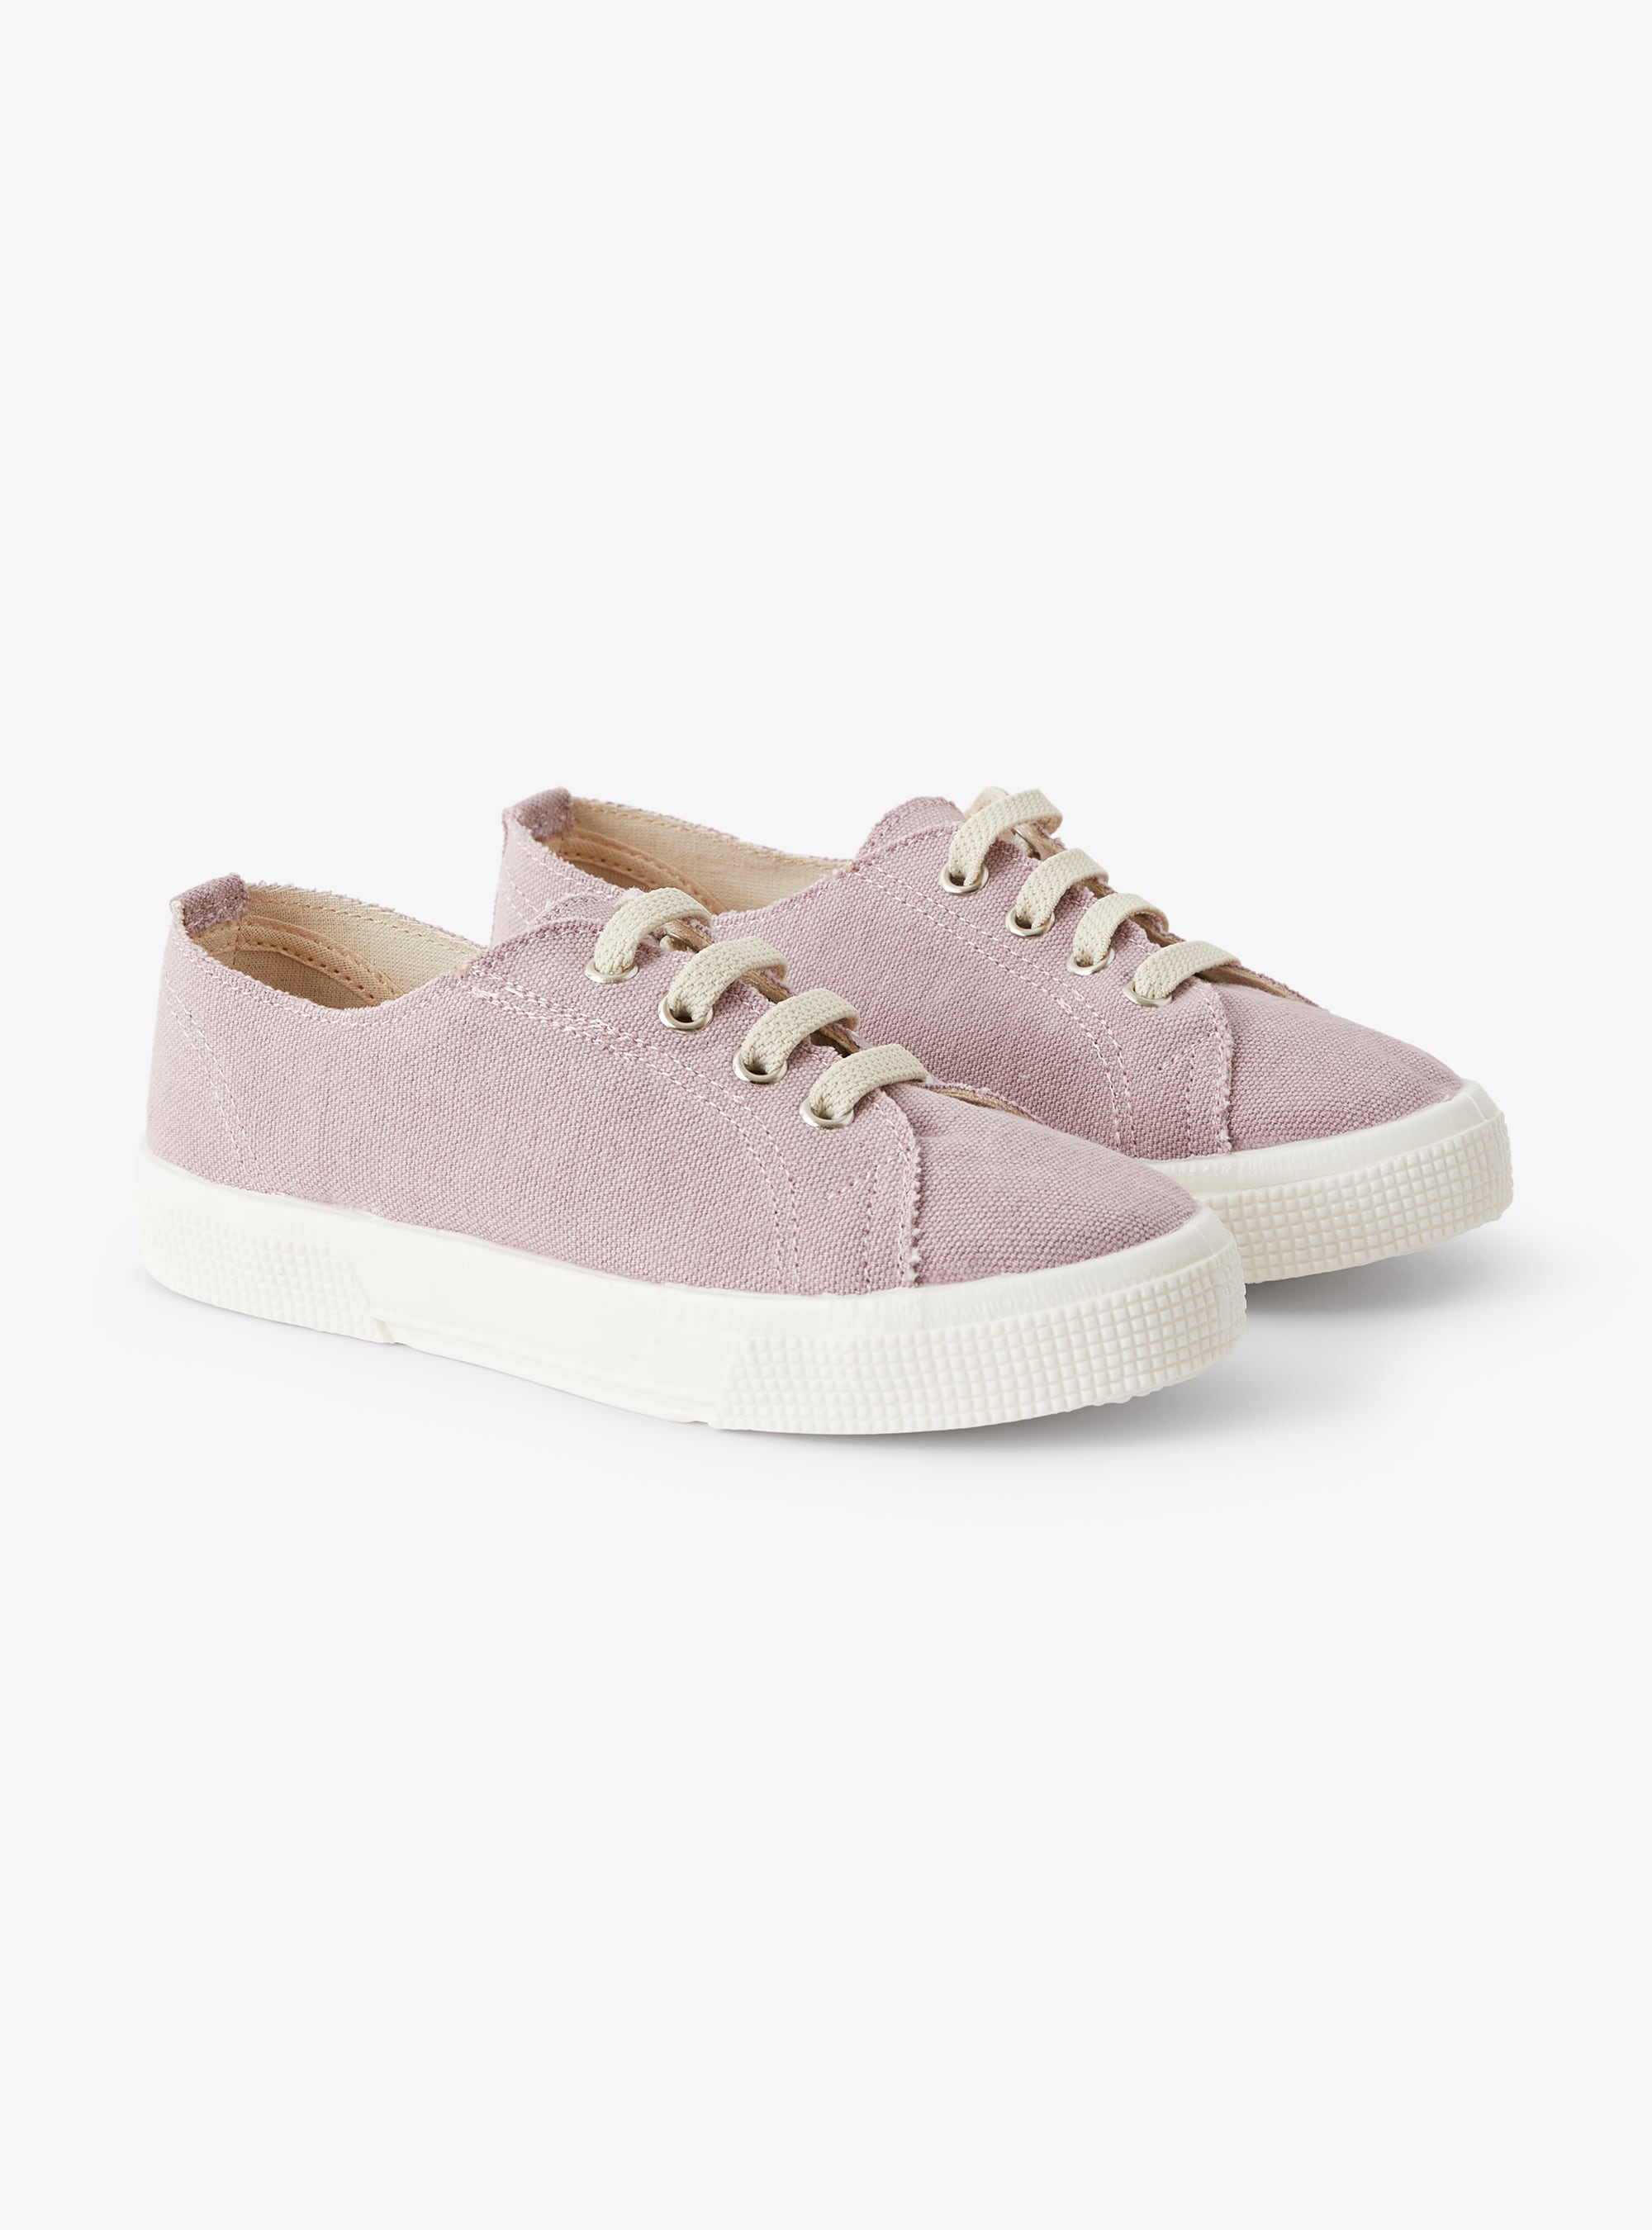 Sneakers en toile lilas avec lacets - Chaussures - Il Gufo